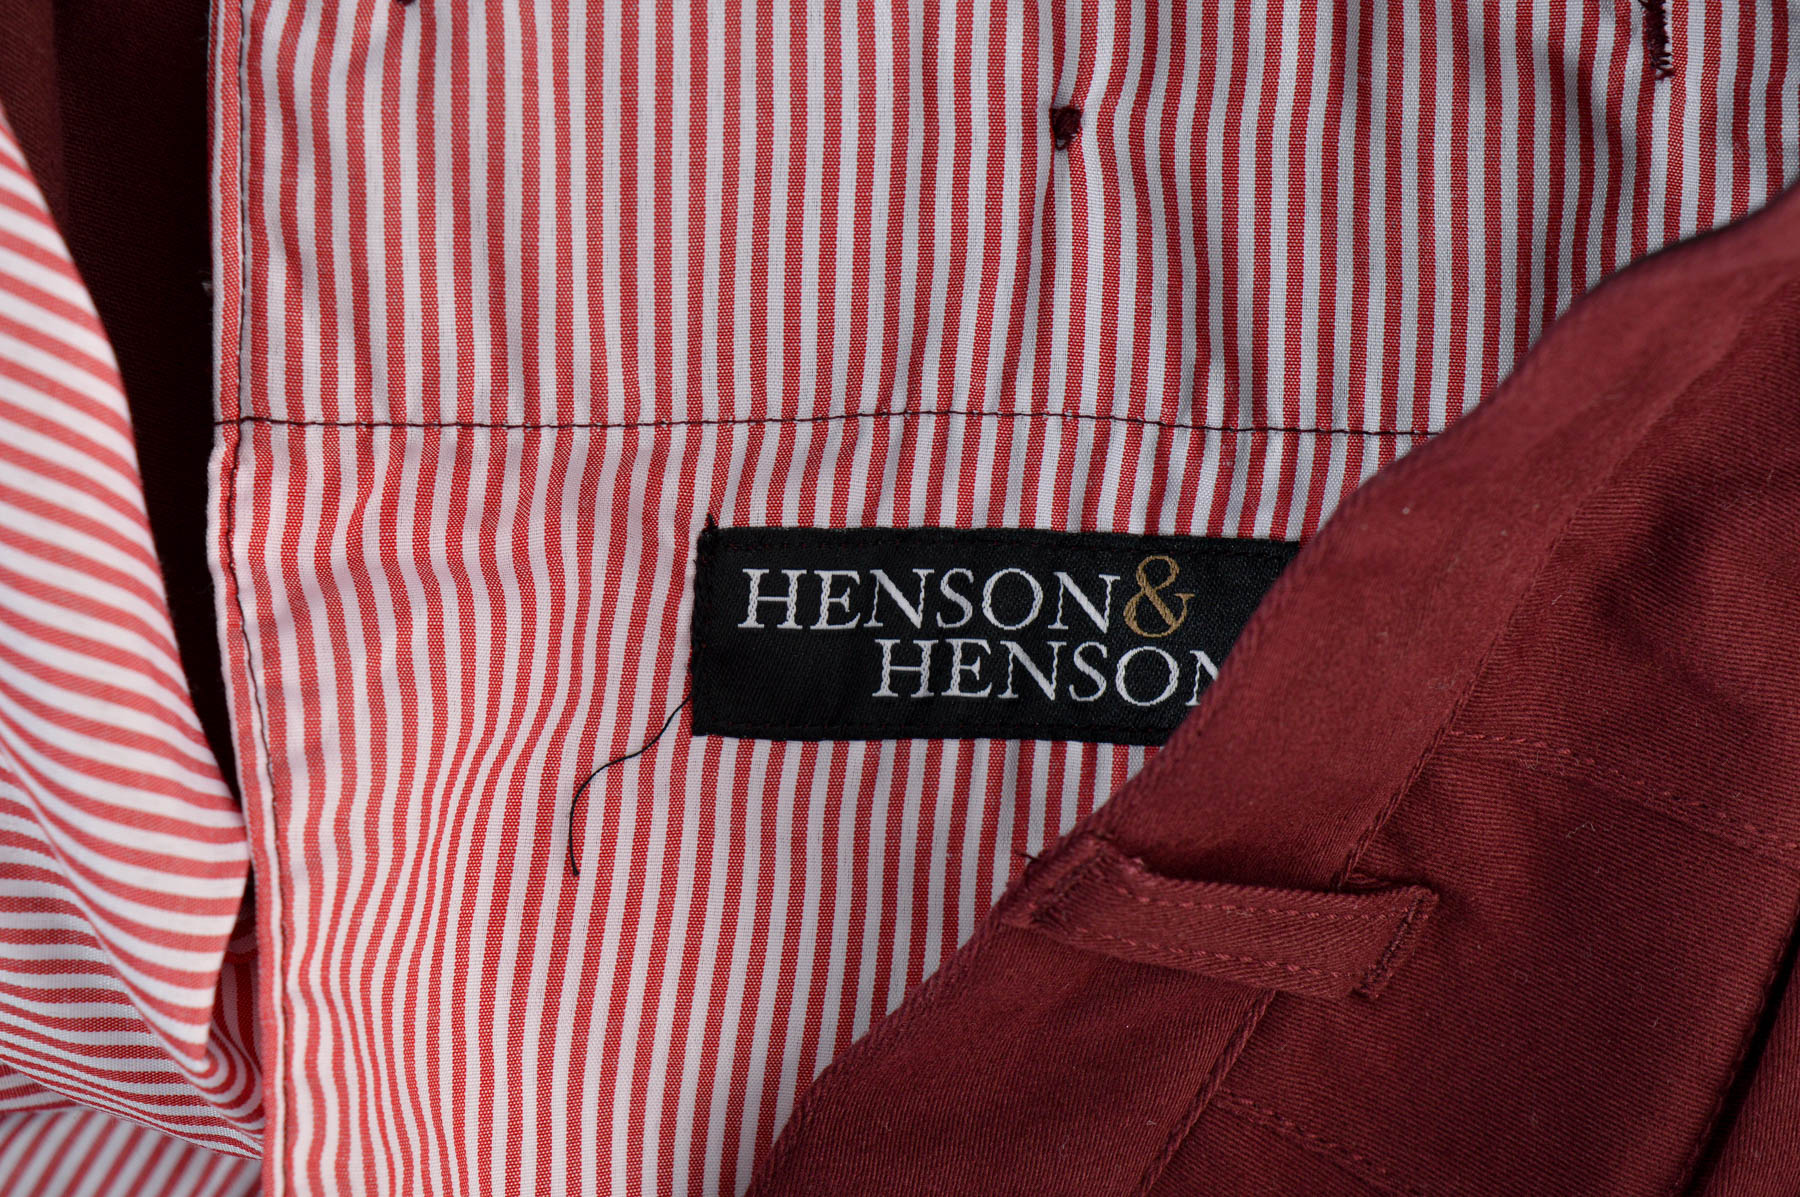 Pantalon pentru bărbați - HENSON & HENSON - 2